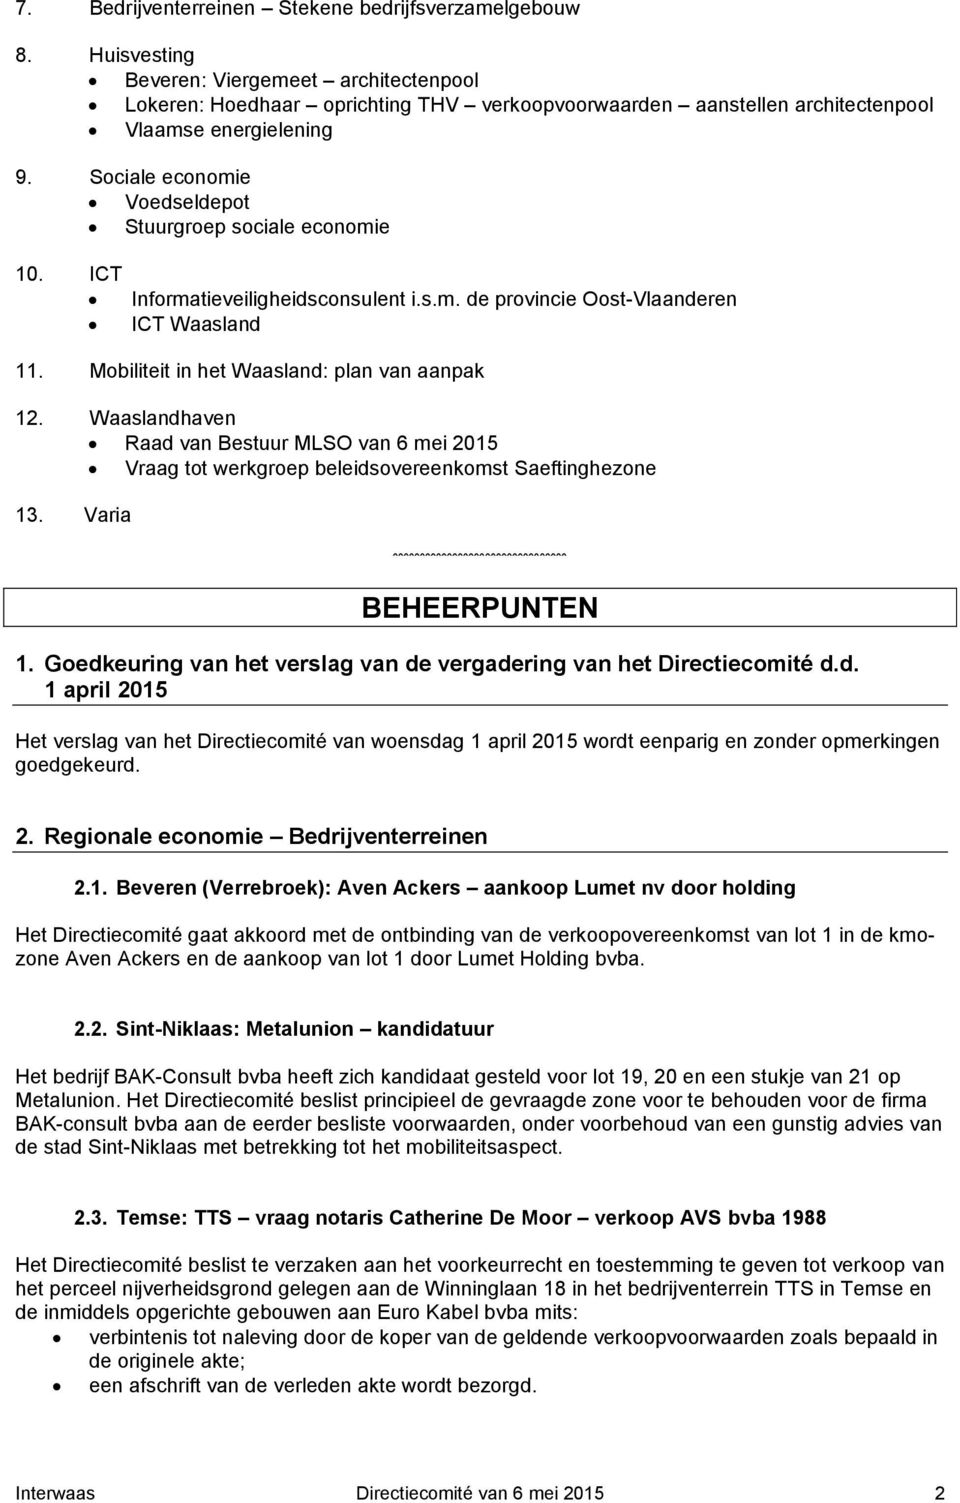 Sociale economie Voedseldepot Stuurgroep sociale economie 10. ICT Informatieveiligheidsconsulent i.s.m. de provincie Oost-Vlaanderen ICT Waasland 11. Mobiliteit in het Waasland: plan van aanpak 12.